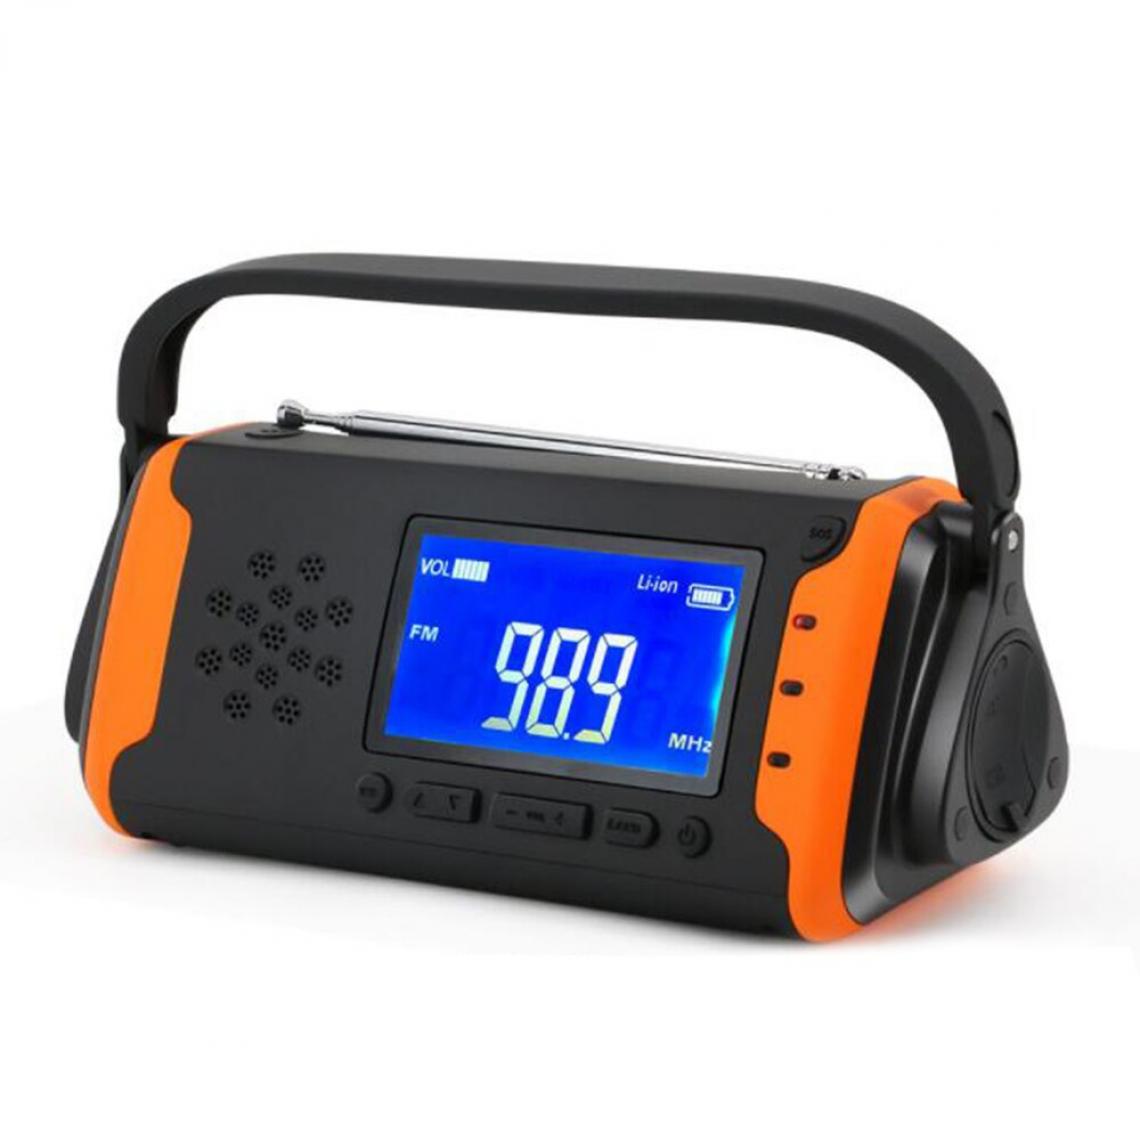 Universal - Radio solaire extérieure portable d'urgence lampe de poche LED manivelle 4000mAh long endurance alimentation électrique banque alerte météo FM/AM/WB |(Orange) - Radio